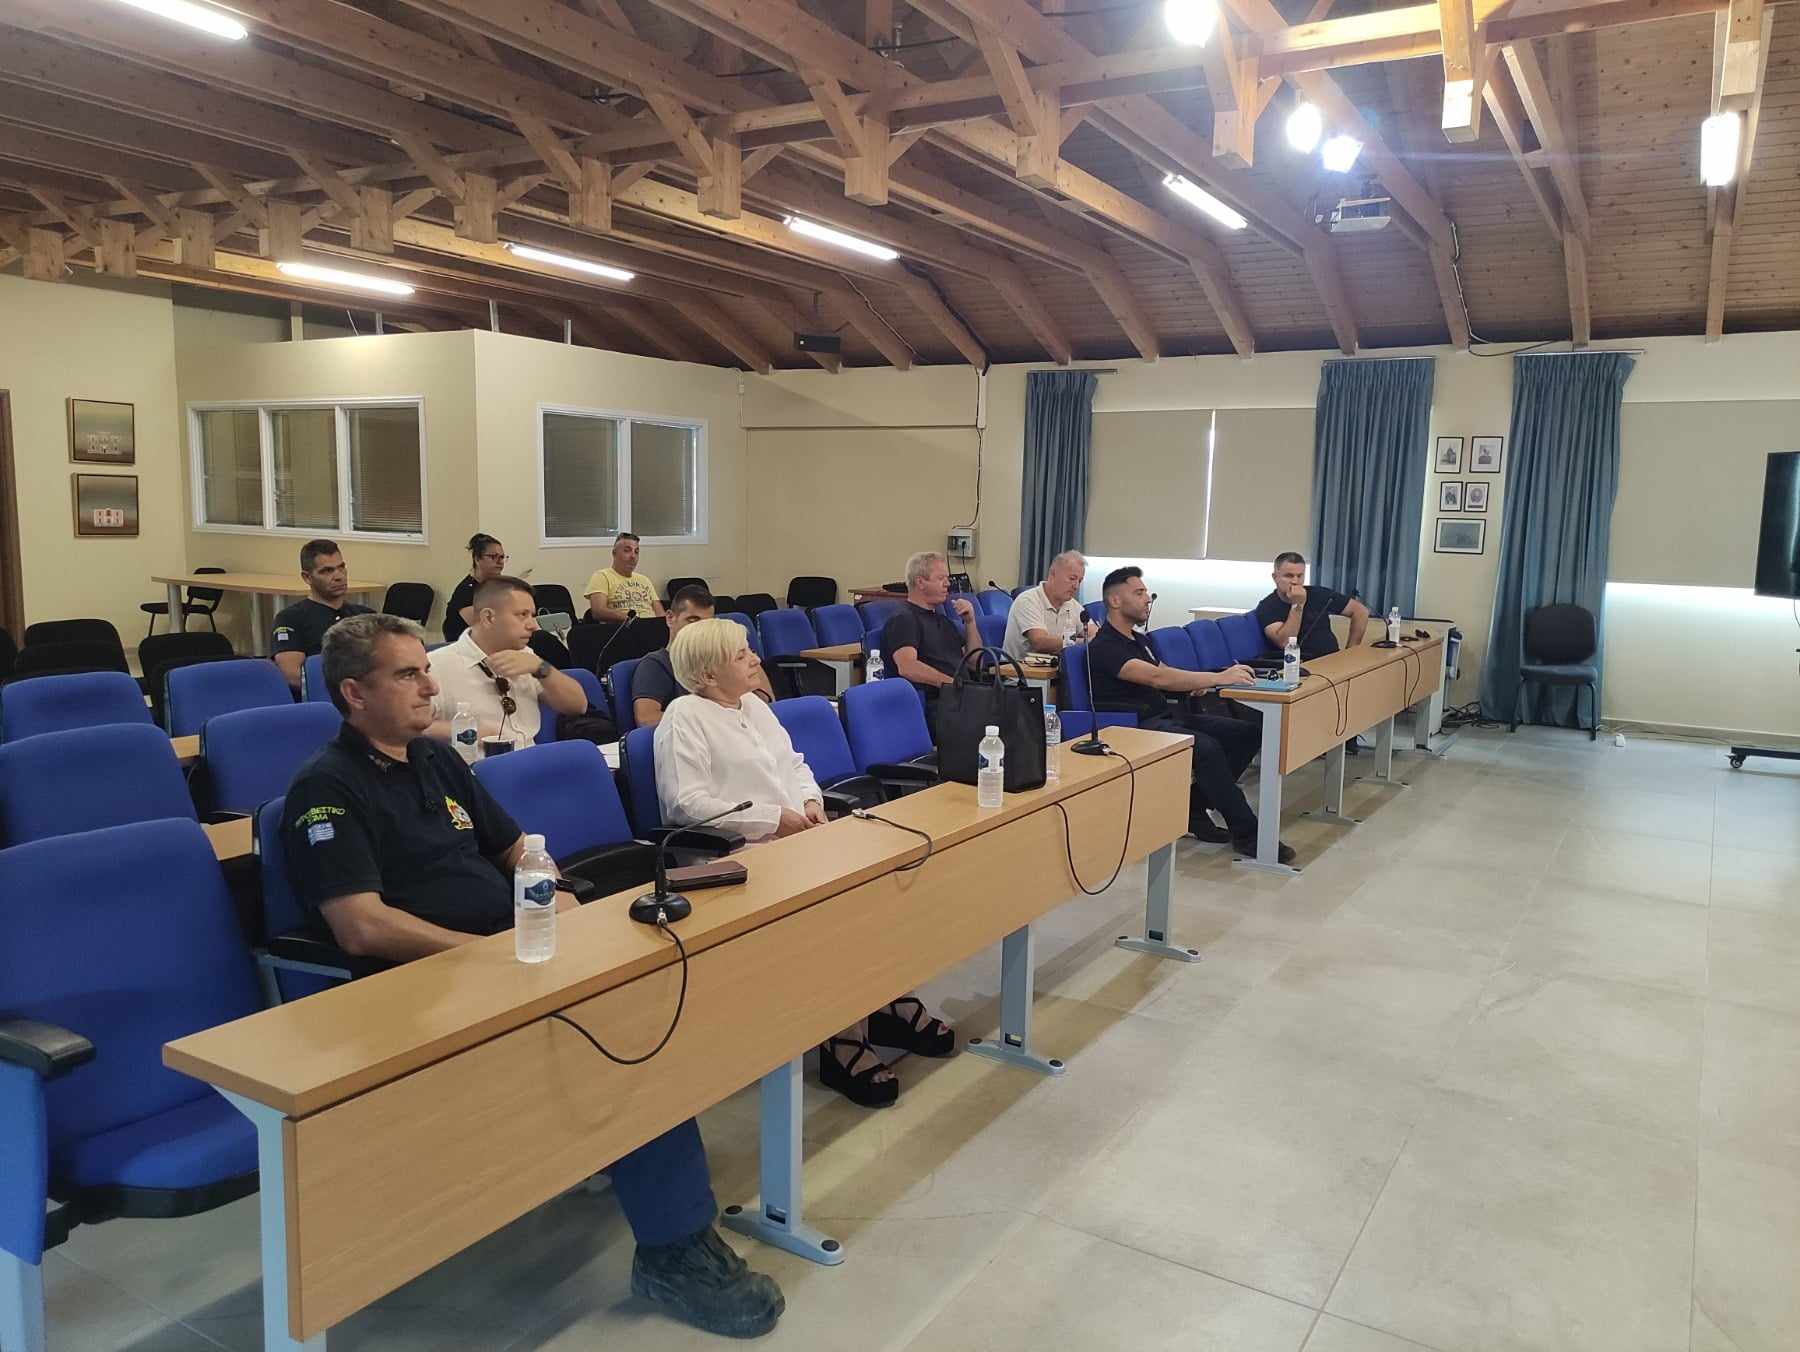 Δήμος Μεσολογγίου: Έκτακτη σύσκεψη του Συντονιστικού Οργάνου Πολιτικής Προστασίας